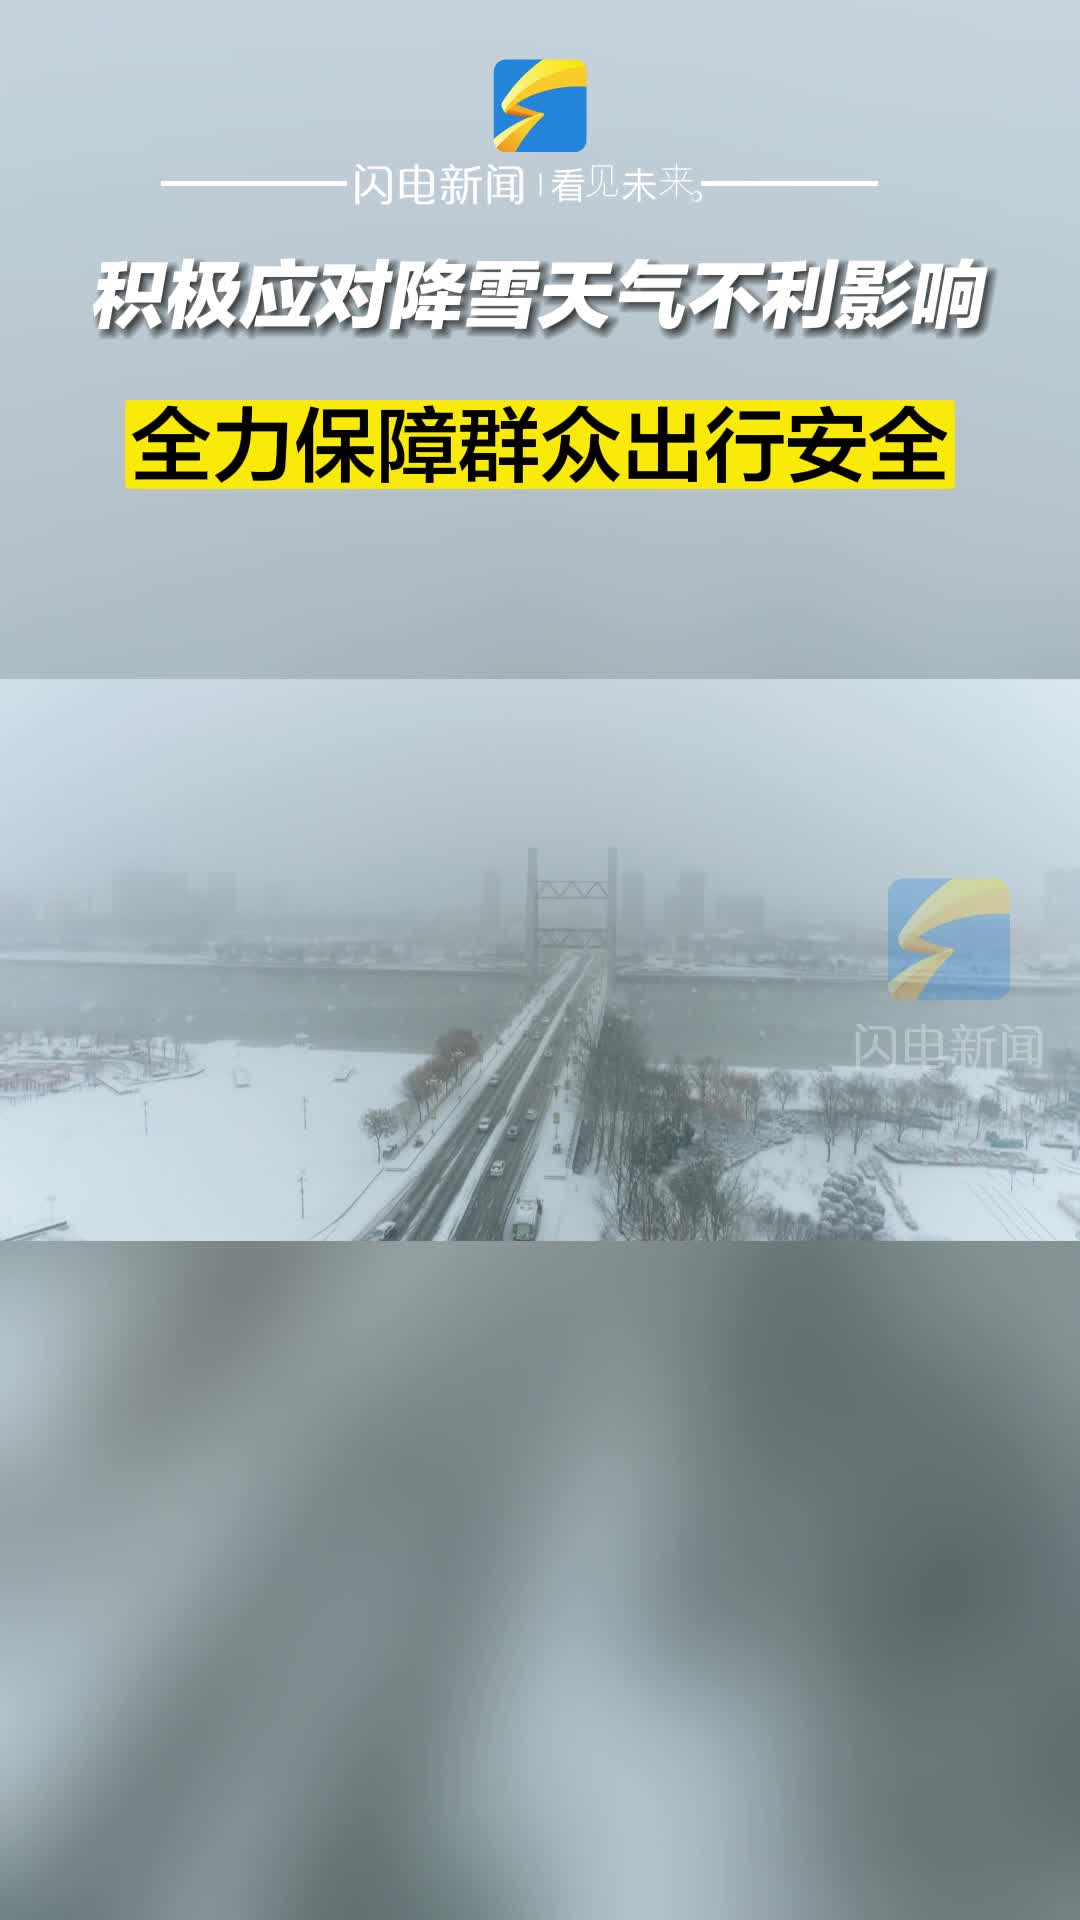 滨州沾化：积极应对降雪天气不利影响 全力保障群众出行安全